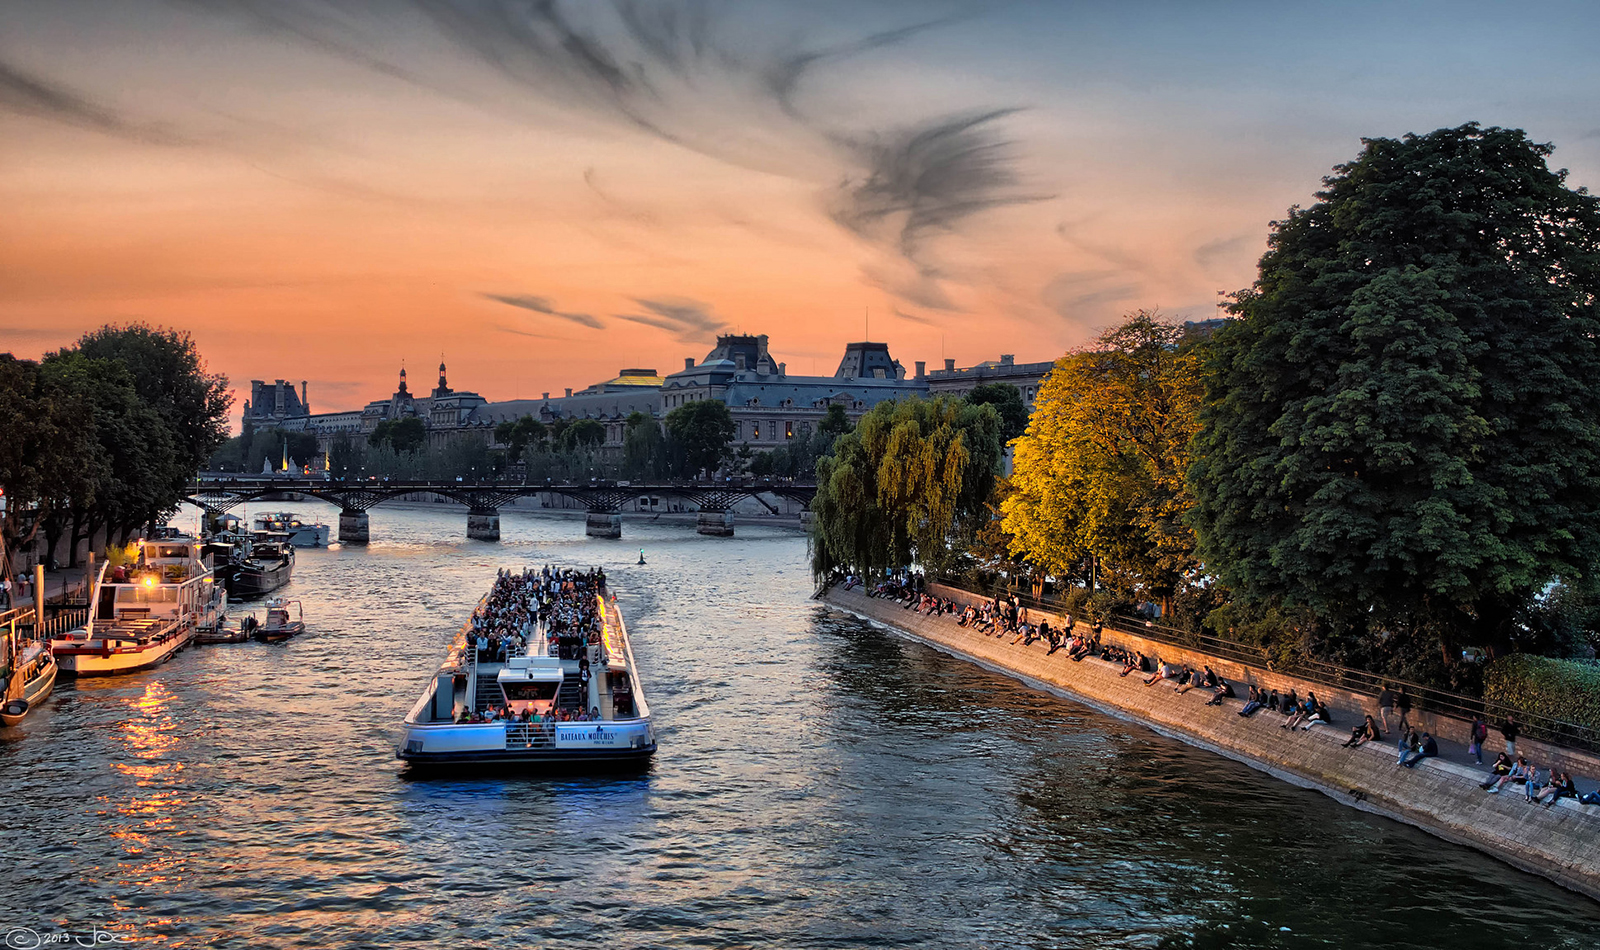 塞纳河游船票 1小时浪漫观光之旅 巴黎必去景点 法国自由行,马蜂窝自由行 - 马蜂窝自由行